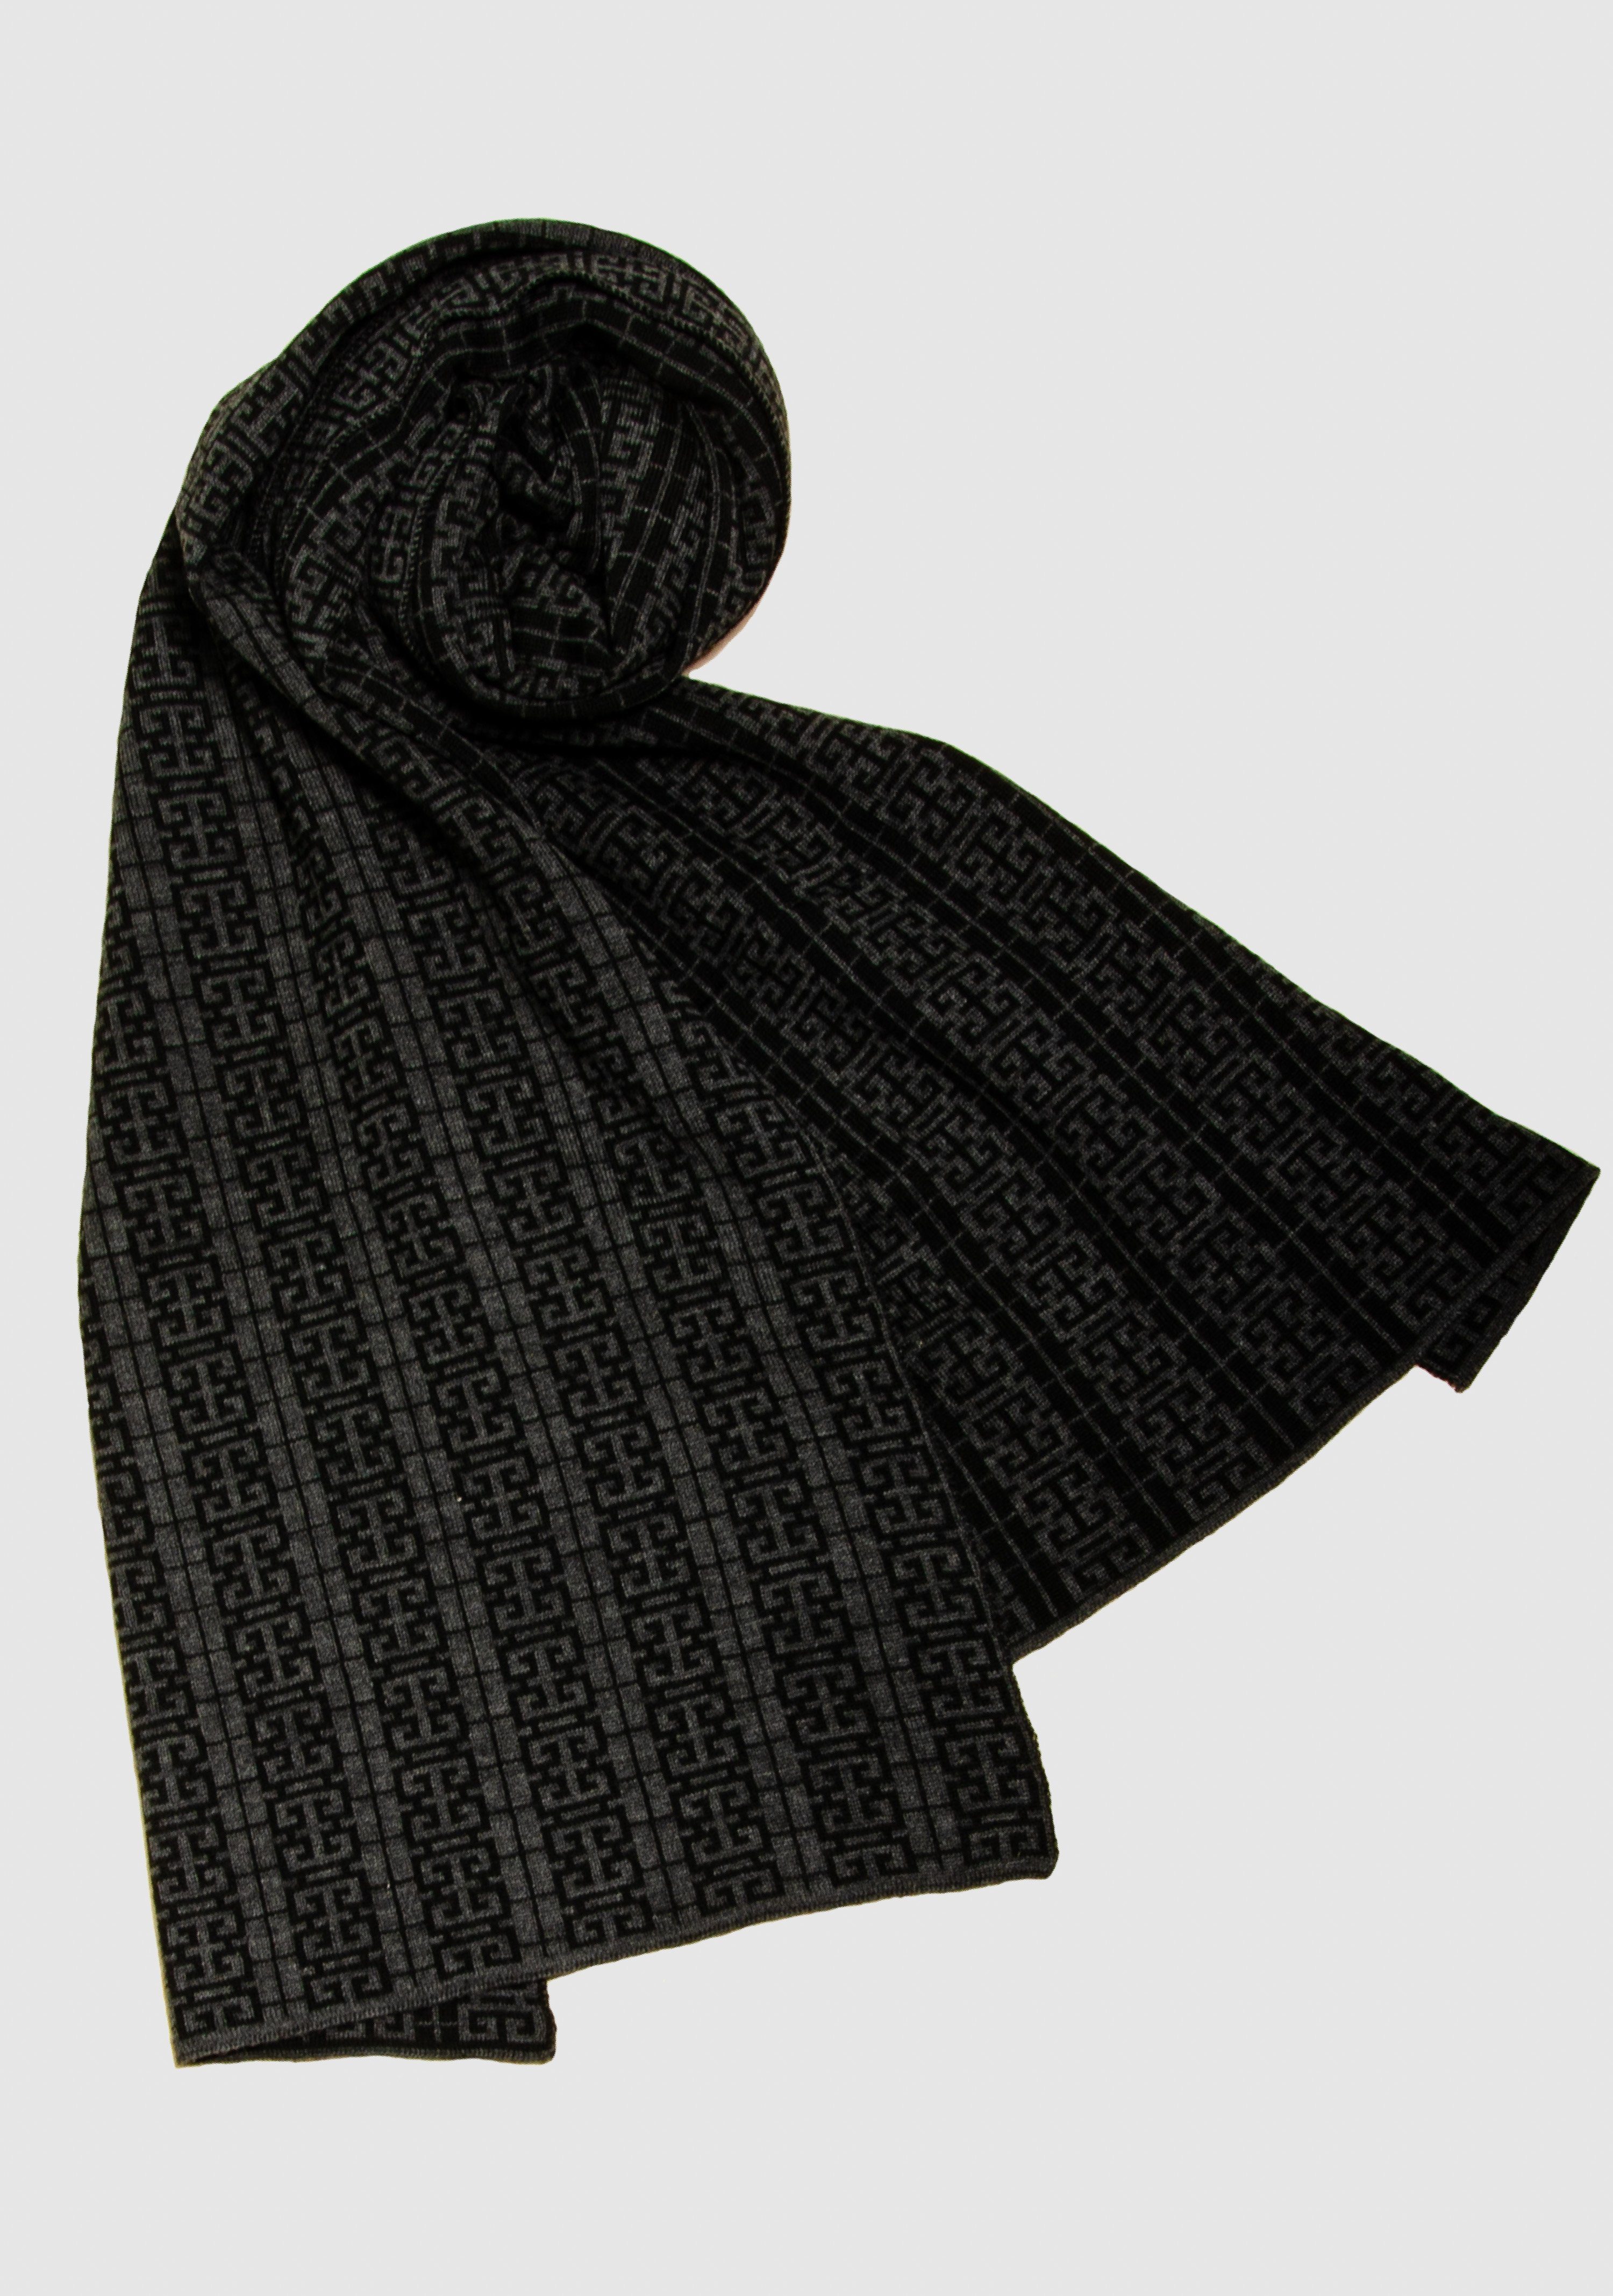 Strickschal in LANARTO Peking Merino extrasoft slow Schal Farben anthrazit_schwarz schönen fashion aus 100%